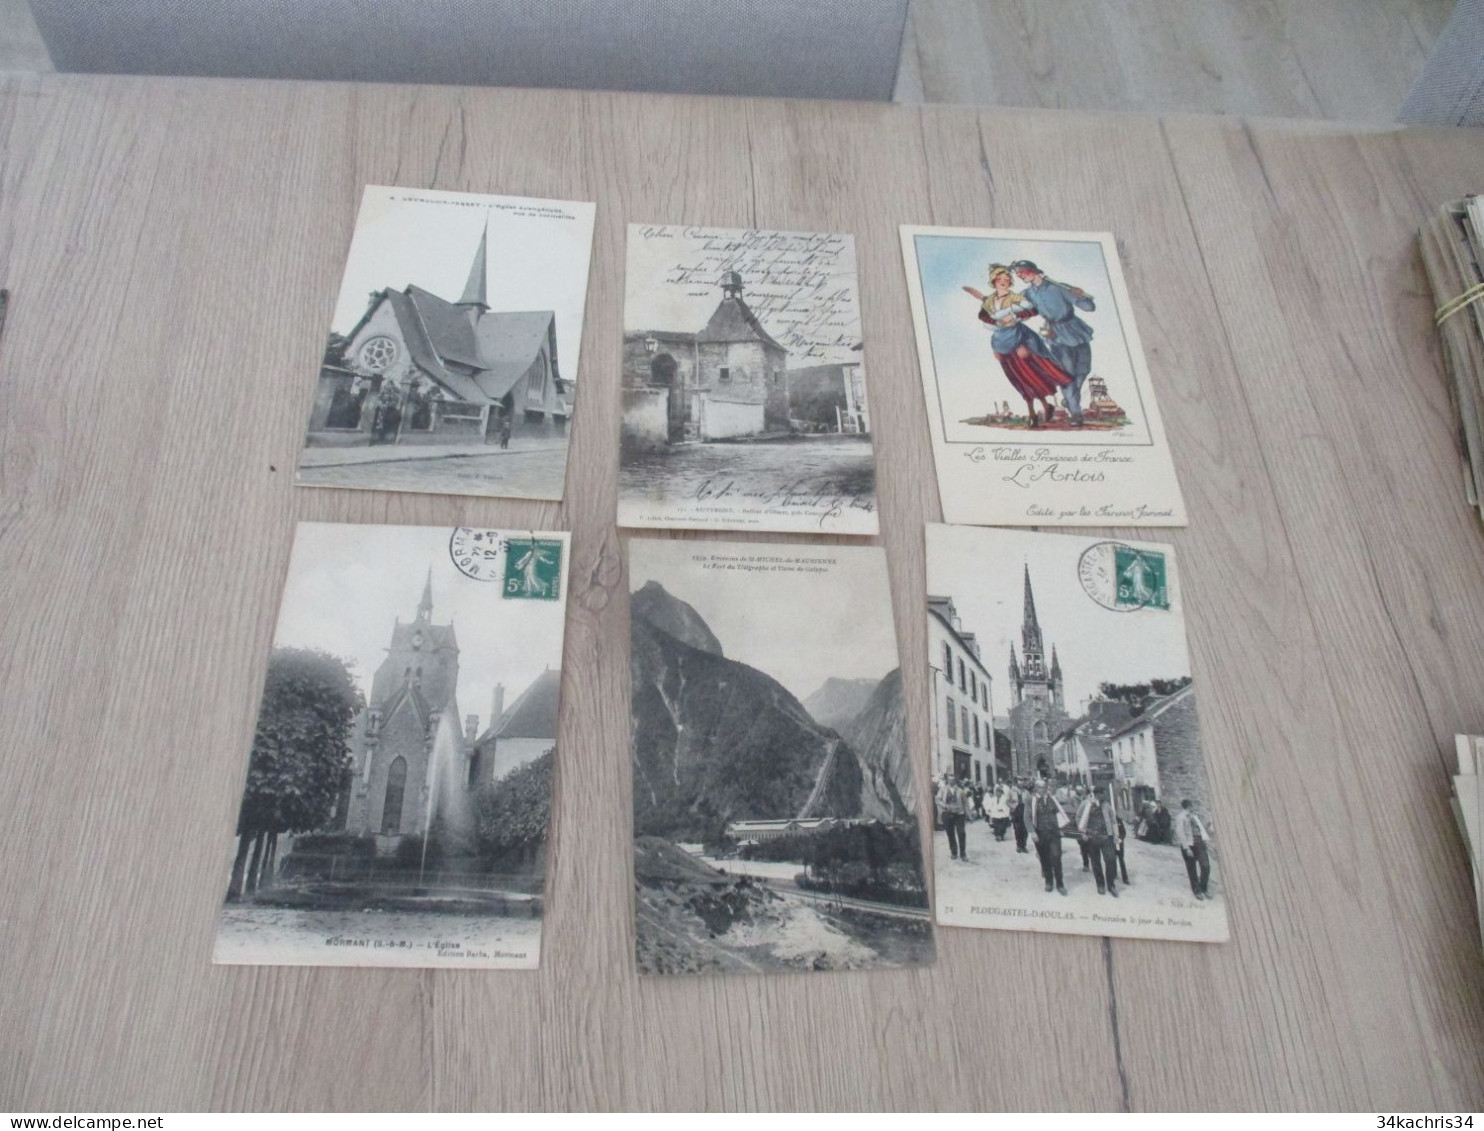 N°4 déstockage collection énorme CPA cartes postales 100 CPA différentes petites et moyennes cartes pas de drouille